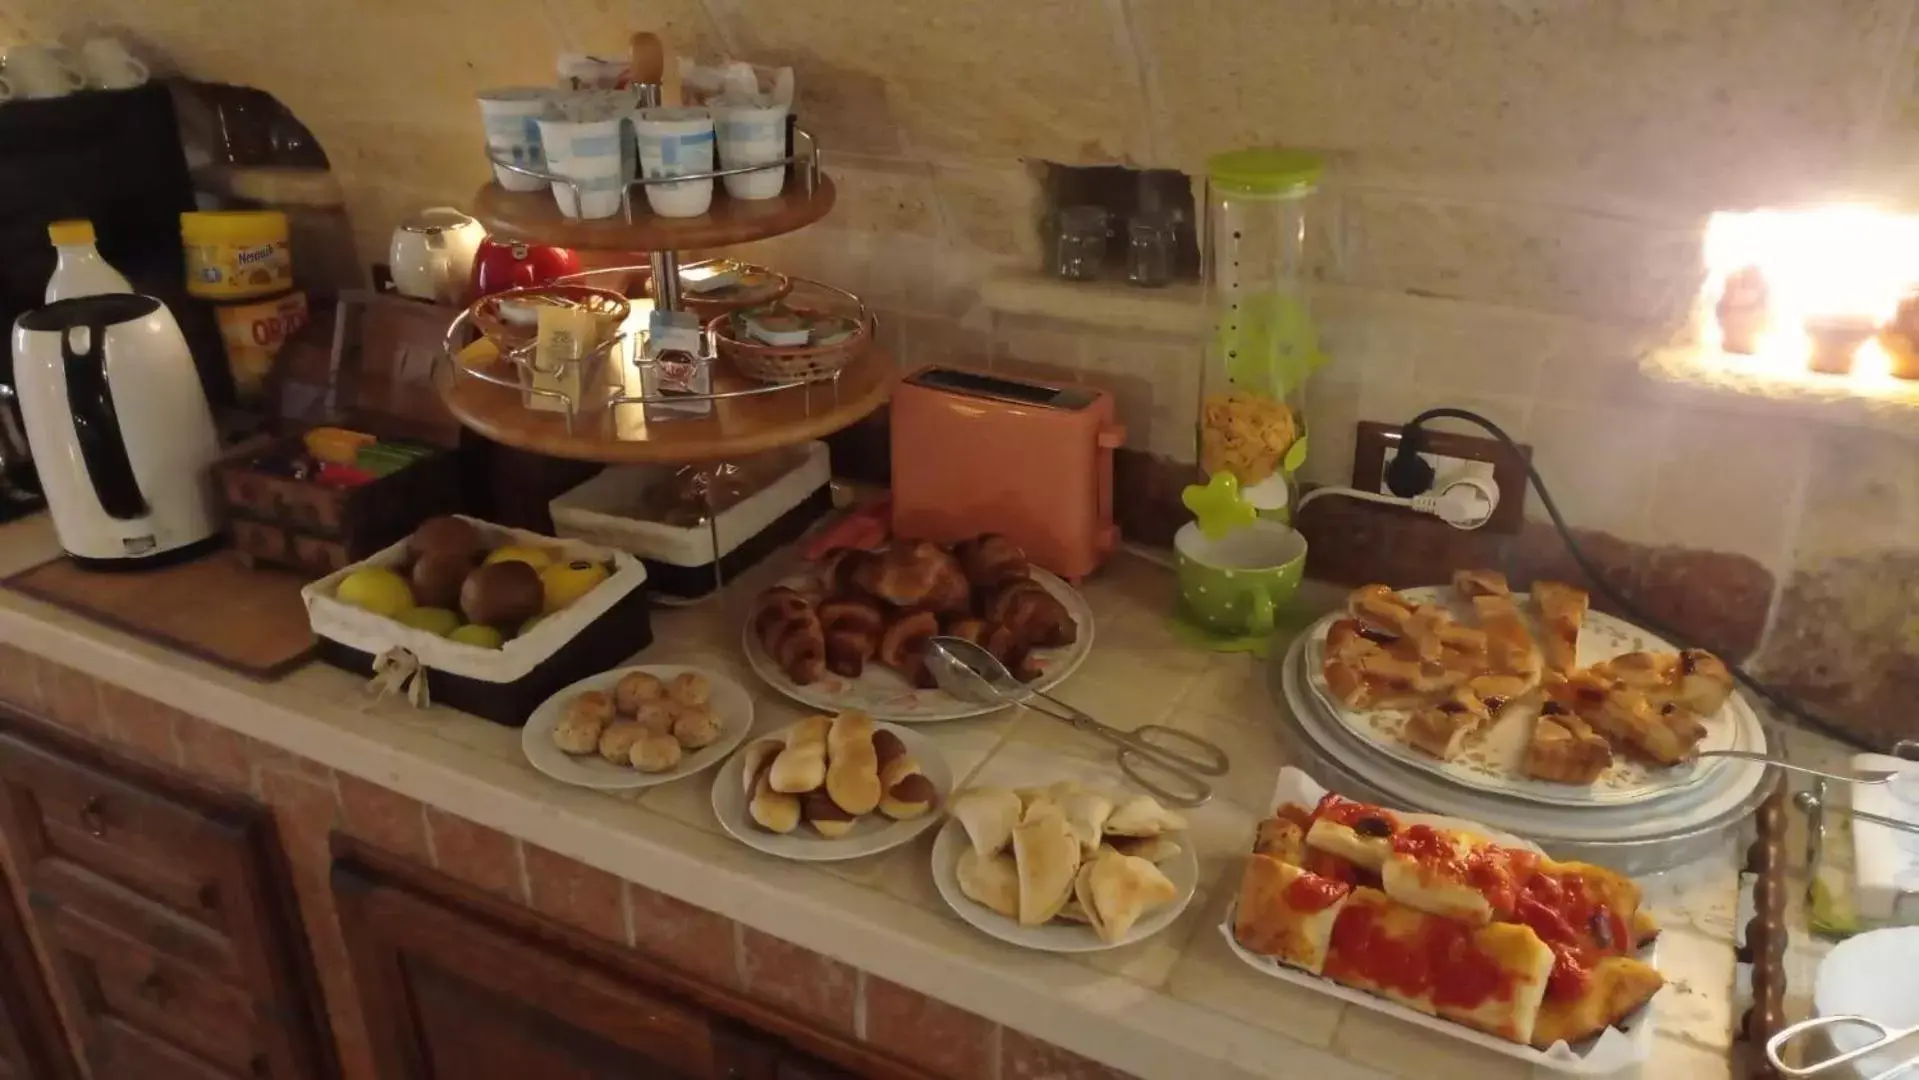 Breakfast in B&B Casa Cimino - Monopoli - Puglia